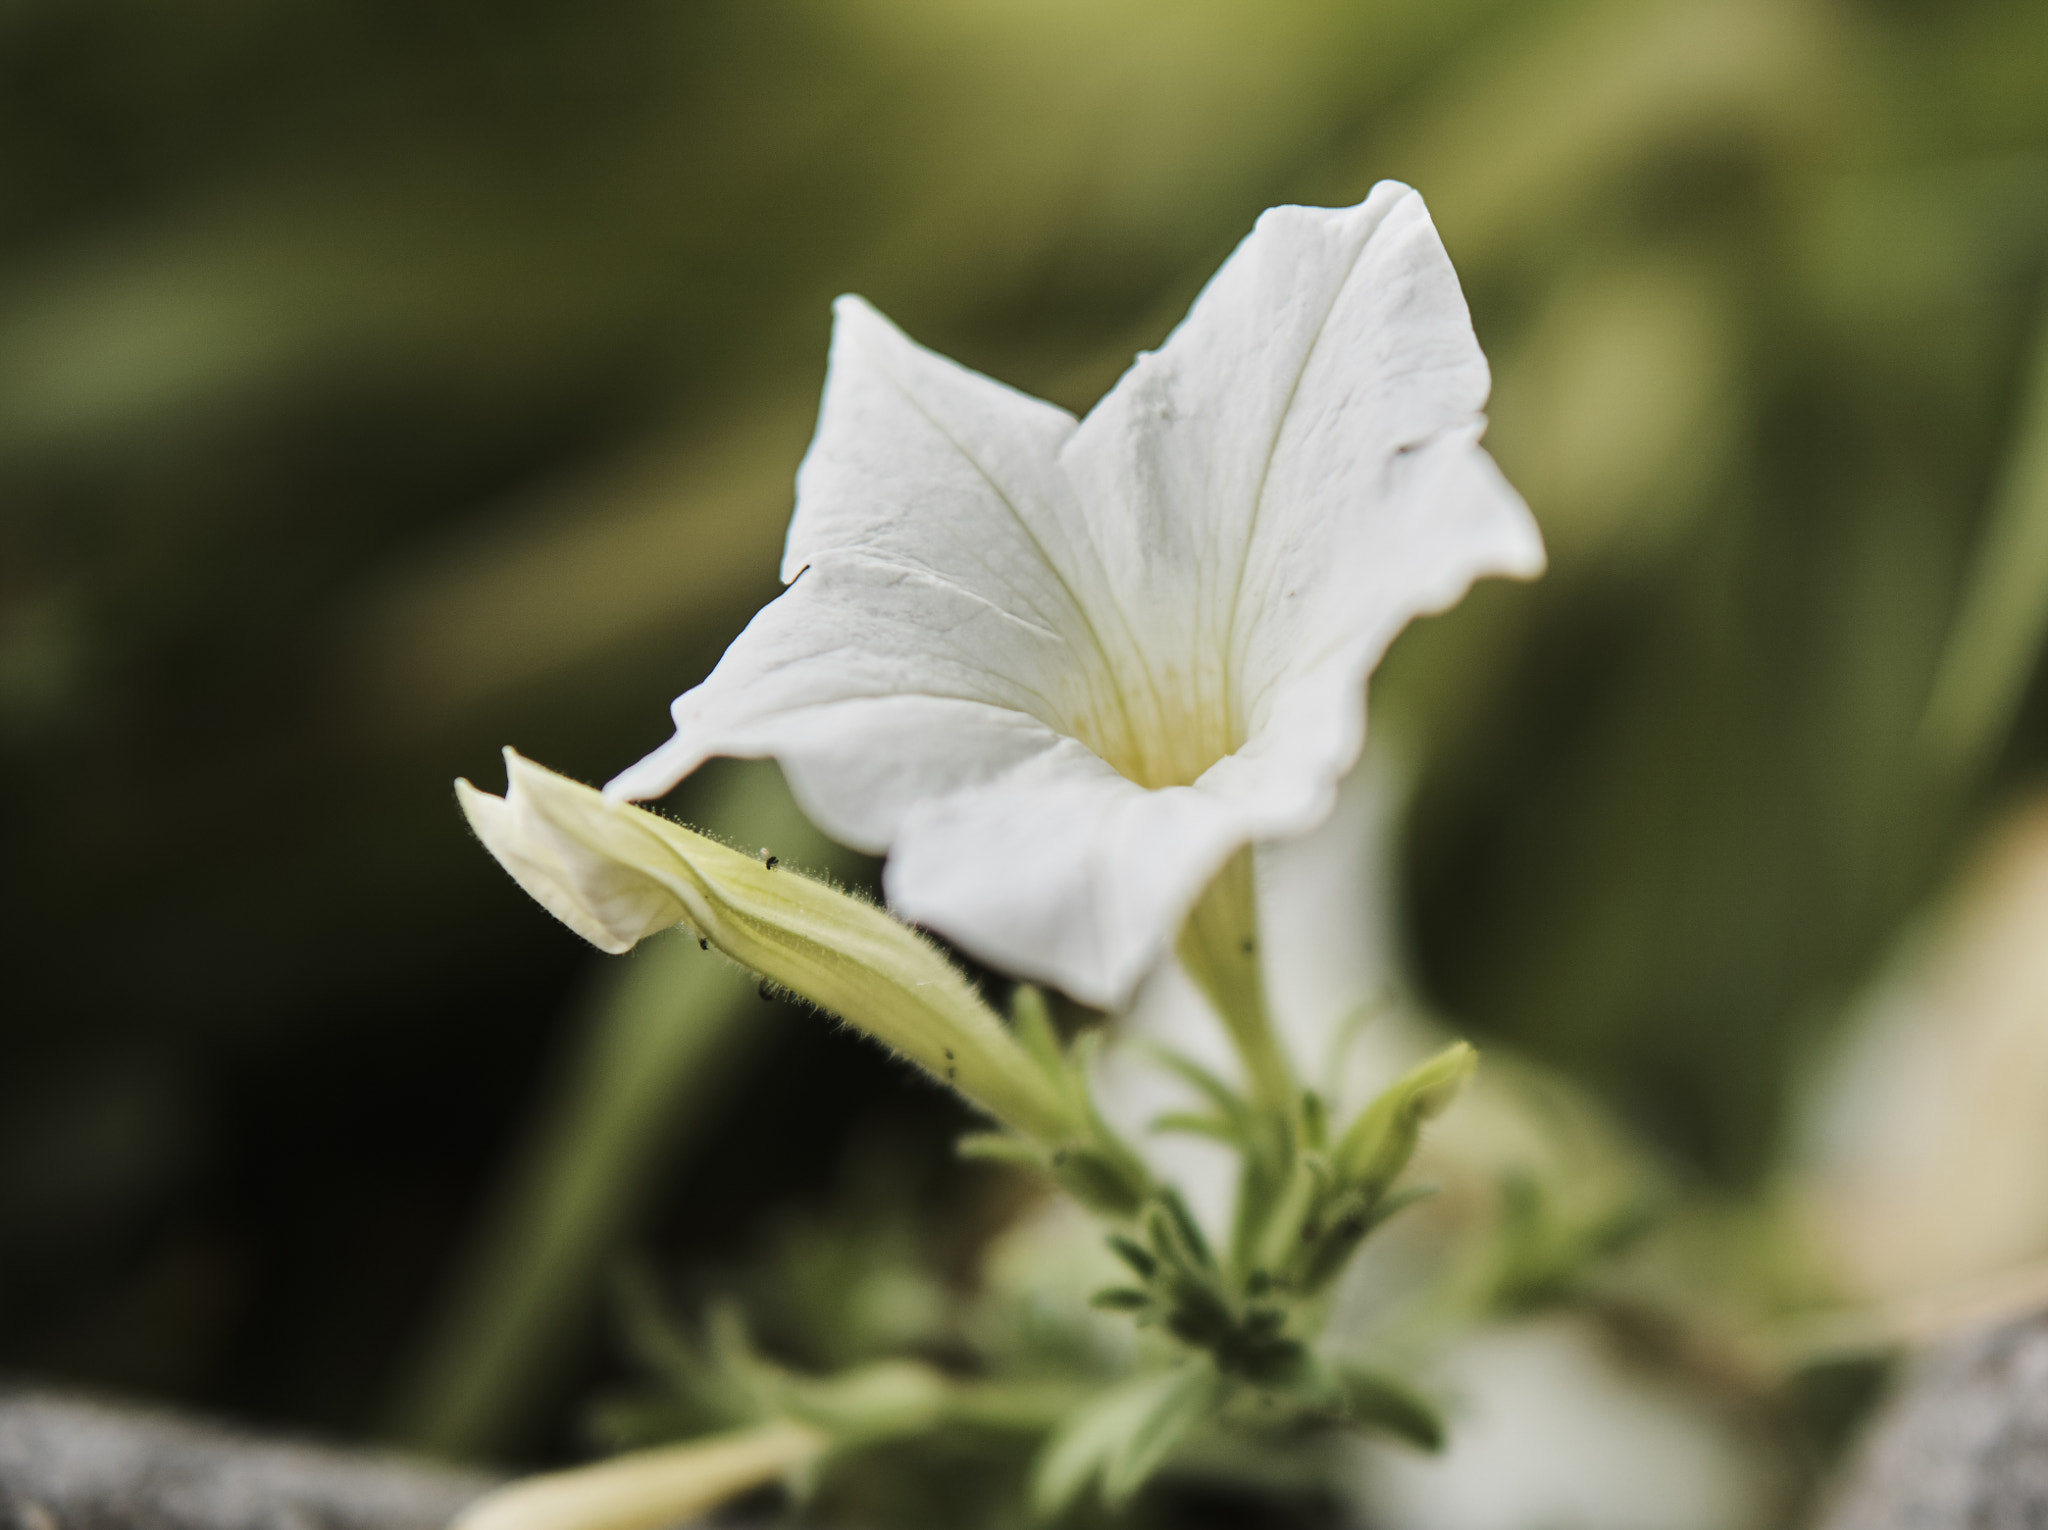 Sony E 50mm F1.8 OSS sample photo. White flower photography